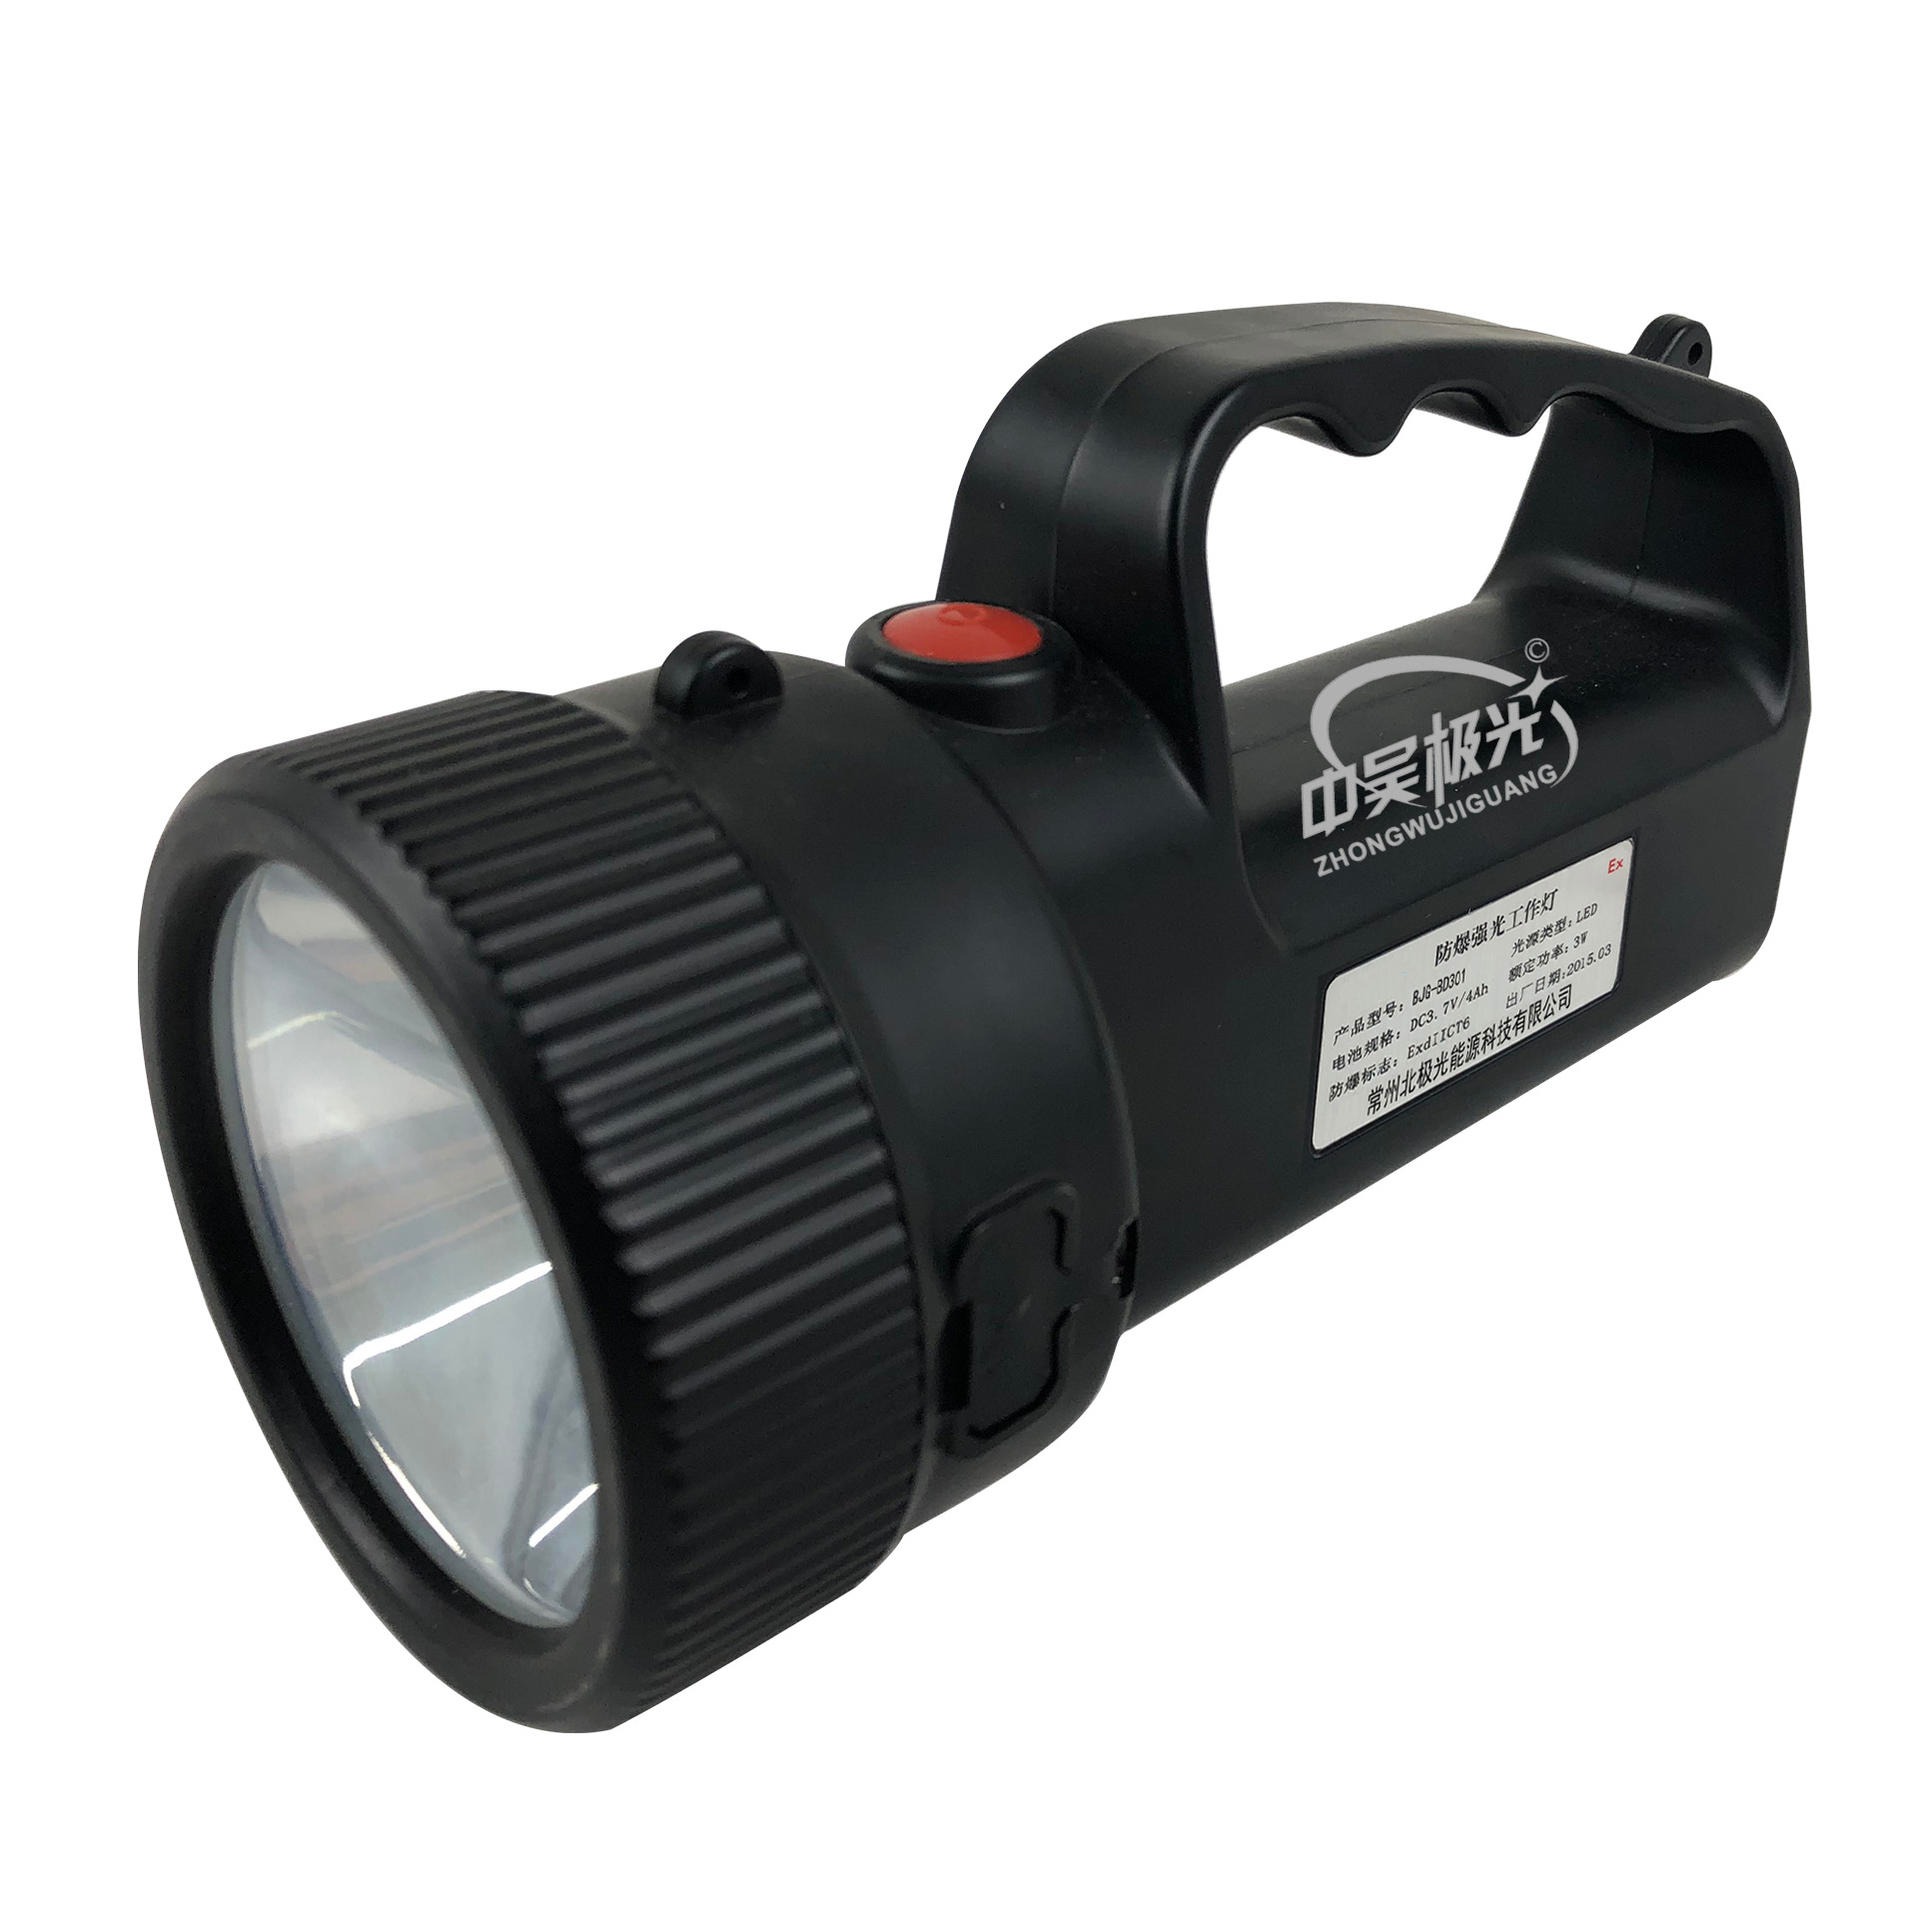 防爆强光工作灯 LED移动工作灯 LED特种灯具 手提式移动应急照明 BJG-AD301